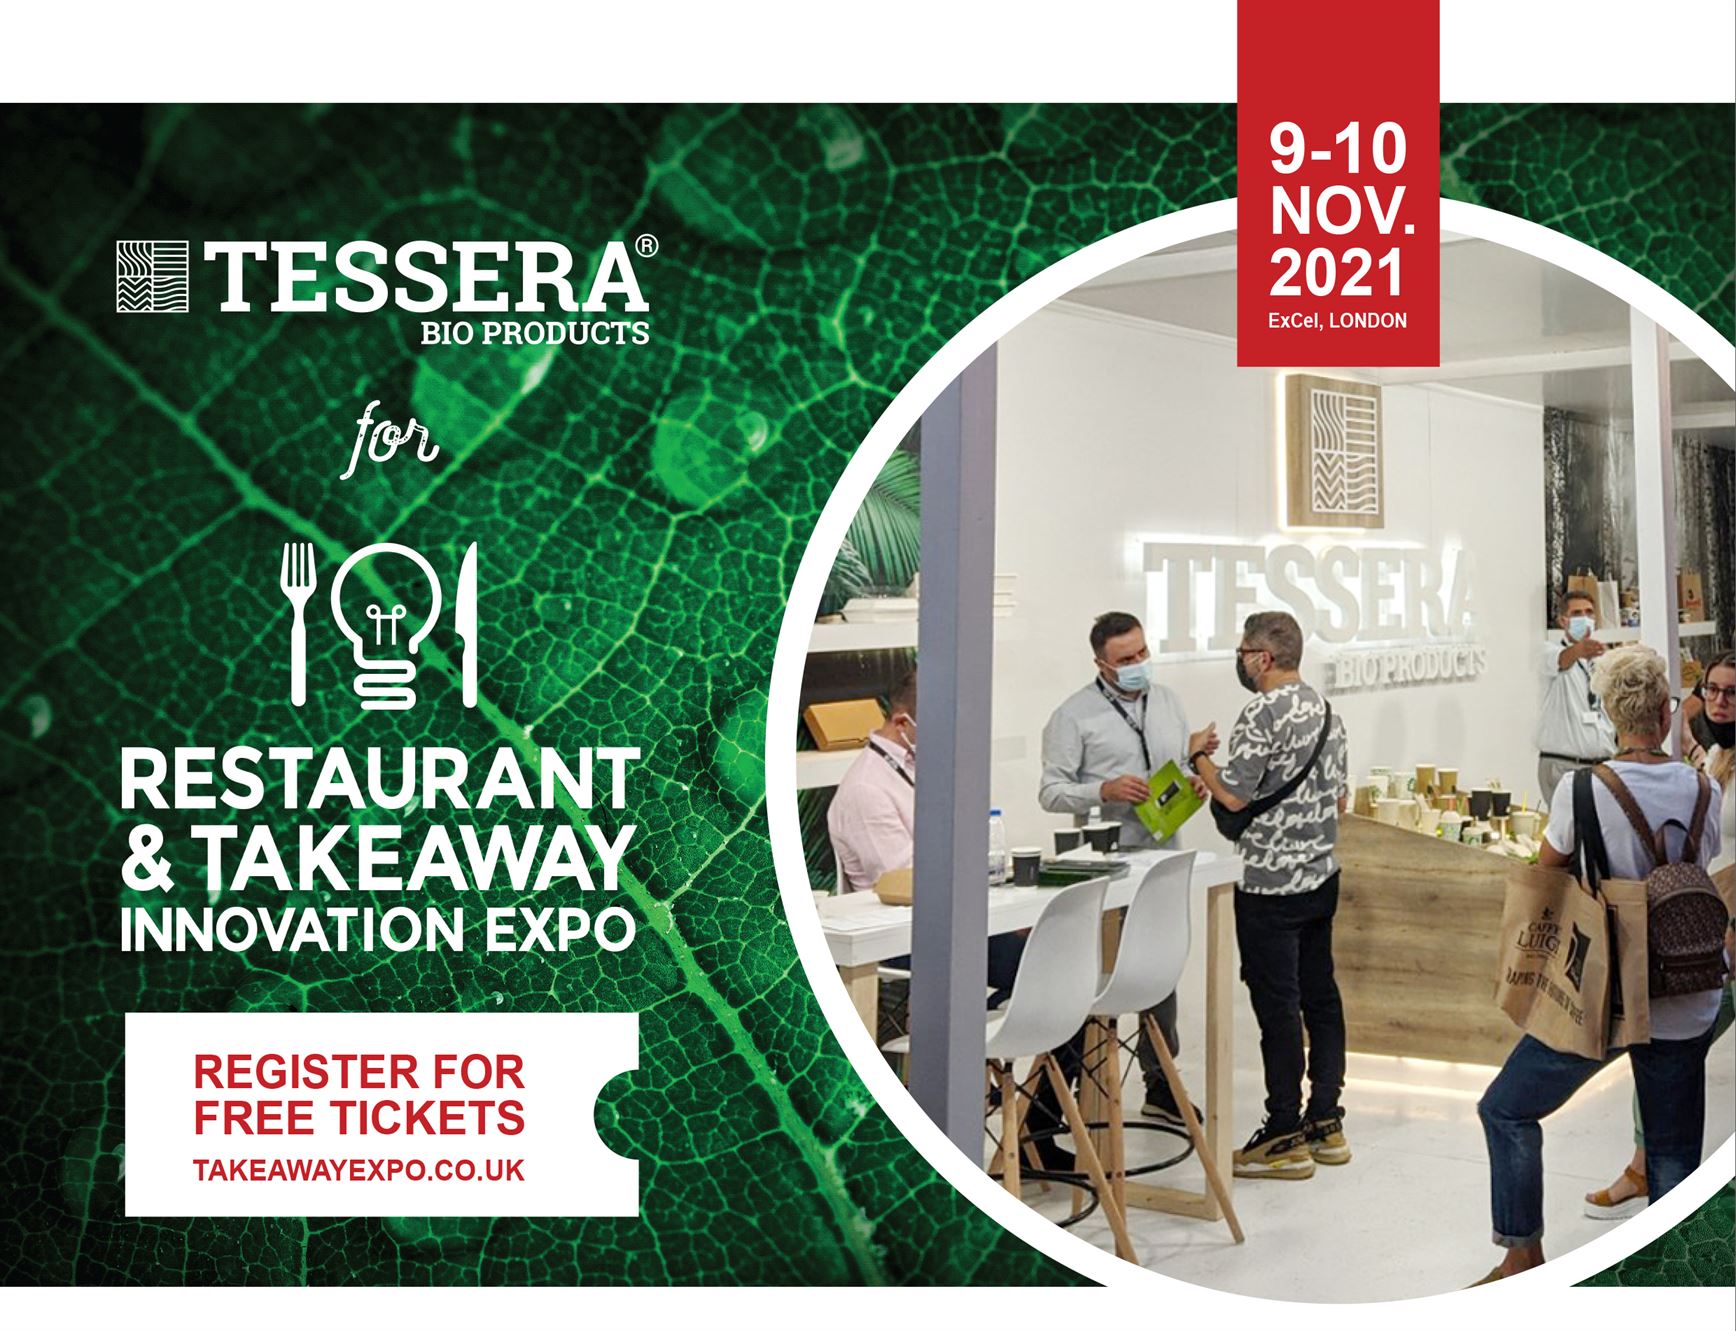 ΤESSERA Bio Products® x Restaurant & Takeaway Innovation Expo | TESSERA Bio Products®